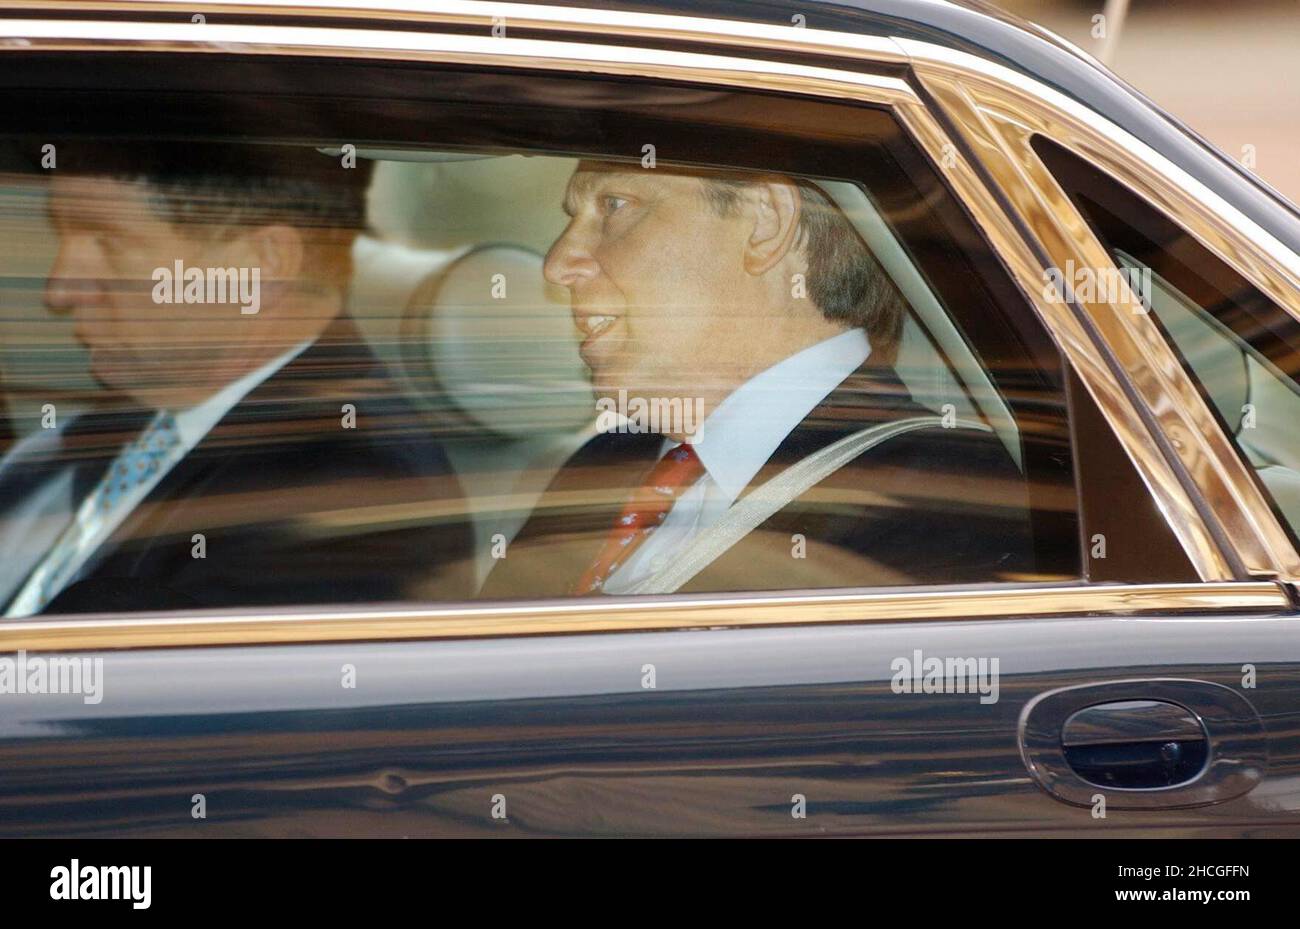 Photo du dossier datée du 05/04/05, du premier ministre de l’époque, Tony Blair (à droite), accompagné de Jonathan Powell, son chef d’état-major, quittant Buckingham Palace, après une audience avec la reine Elizabeth IIDate de publication : le mercredi 29 décembre 2021. Banque D'Images